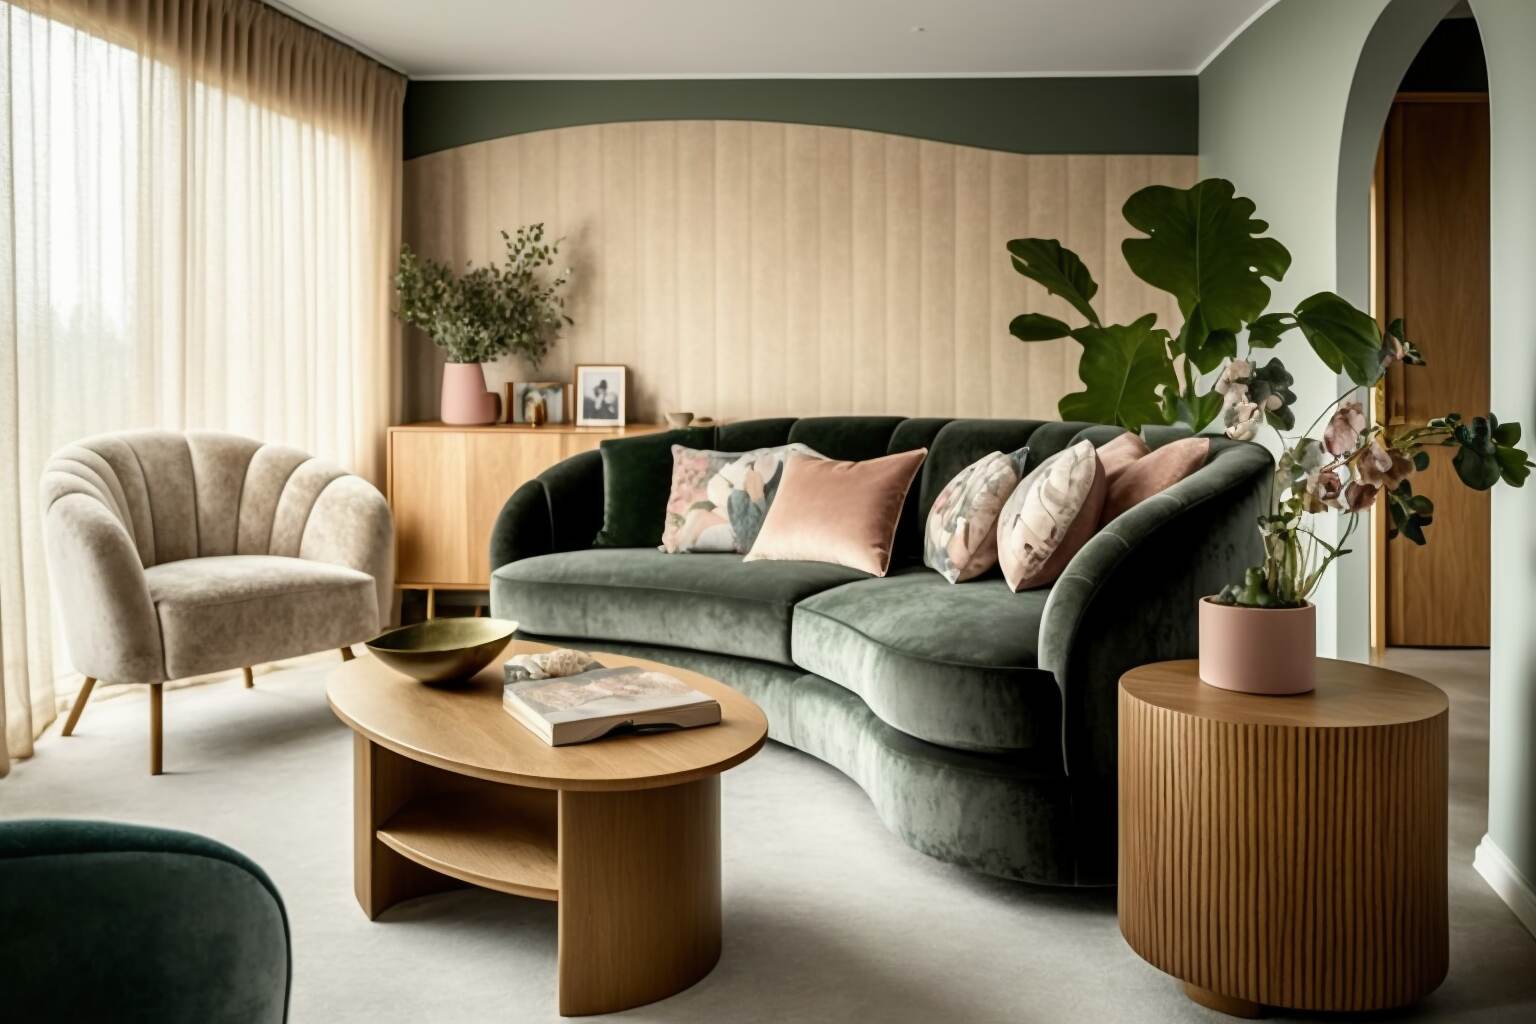 Ein Wohnzimmer Mit Geschwungenen Möbeln, Darunter Ein Rundes Sofa Und Ein Couchtisch